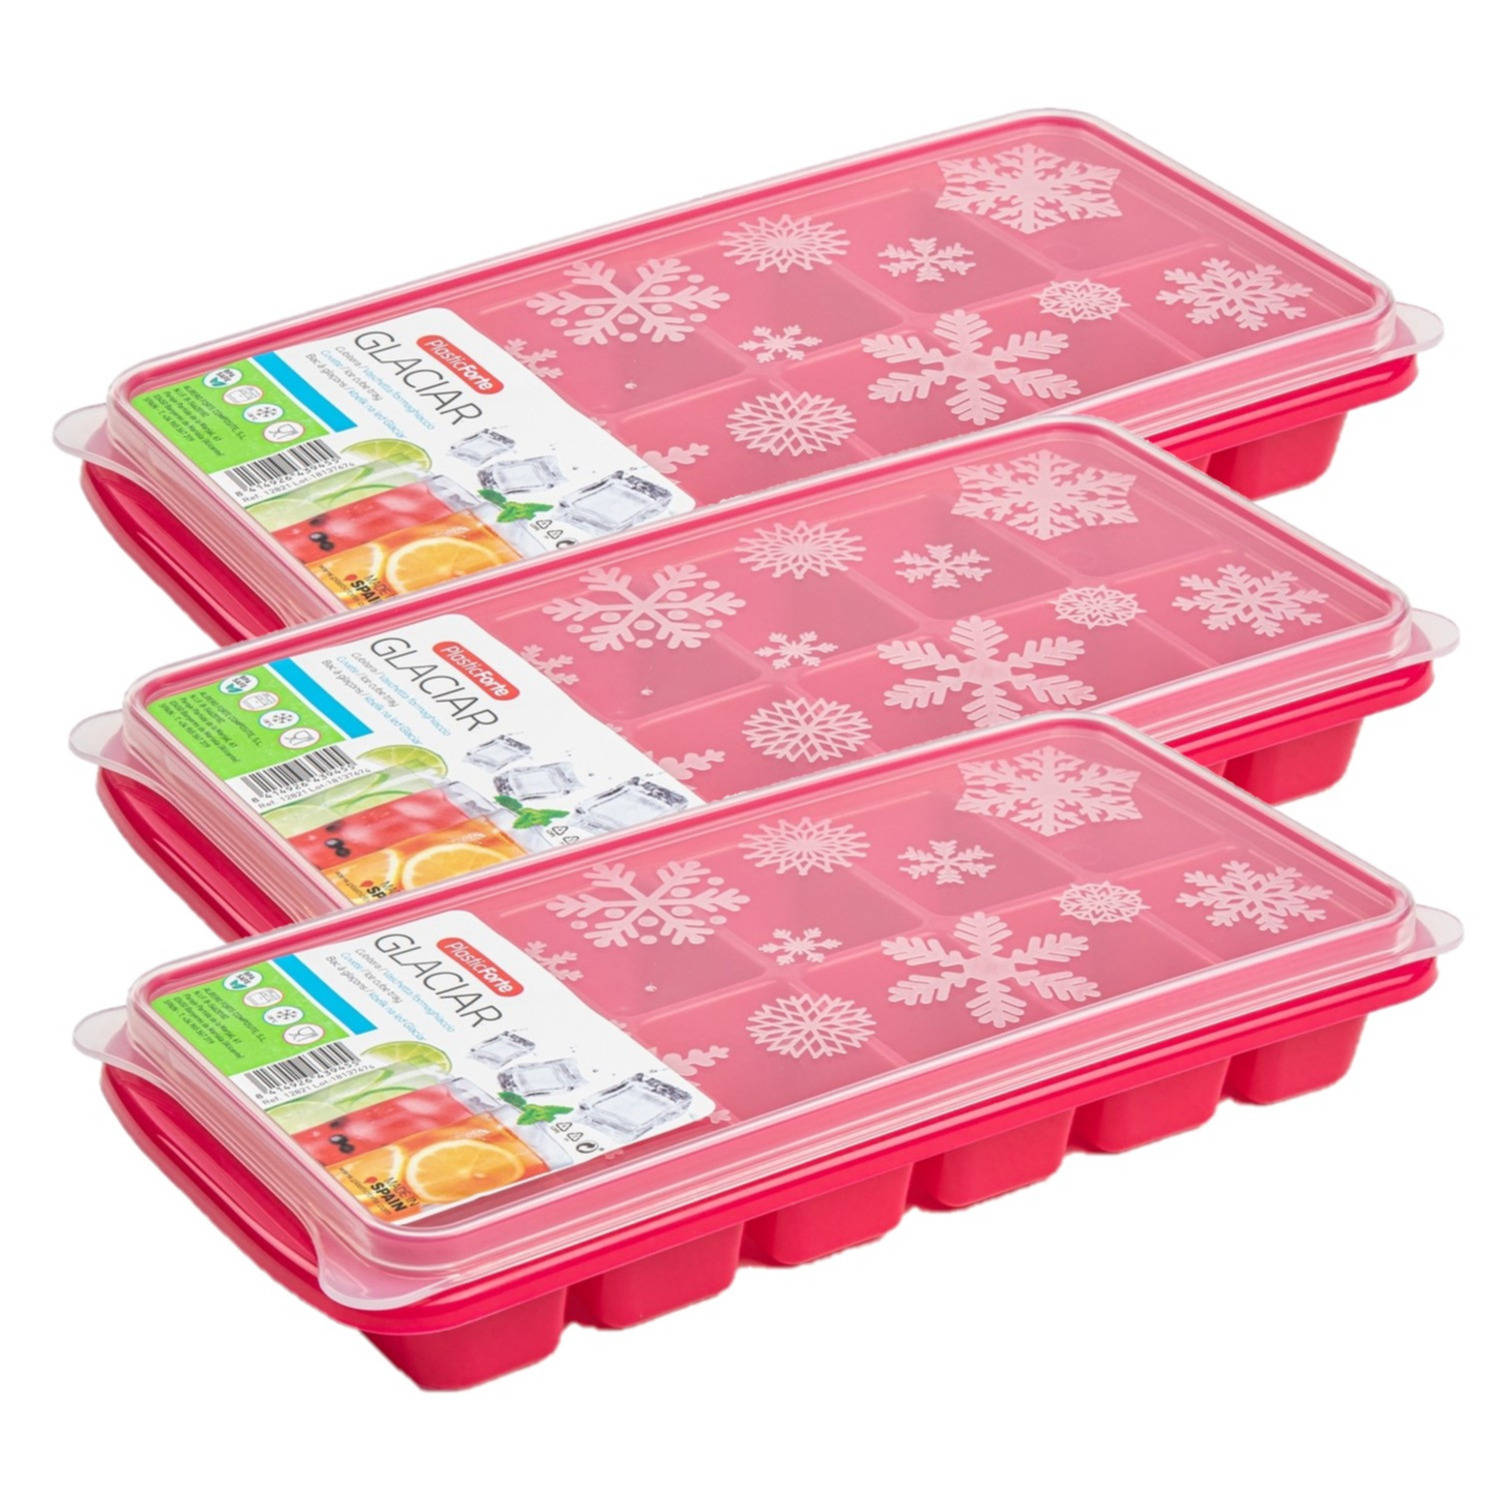 Erge, ernstige aankomen Barry 3x stuks Trays met ijsblokjes/ijsklontjes vormpjes 12 vakjes kunststof roze  met deksel - IJsblokjesvormen | Blokker